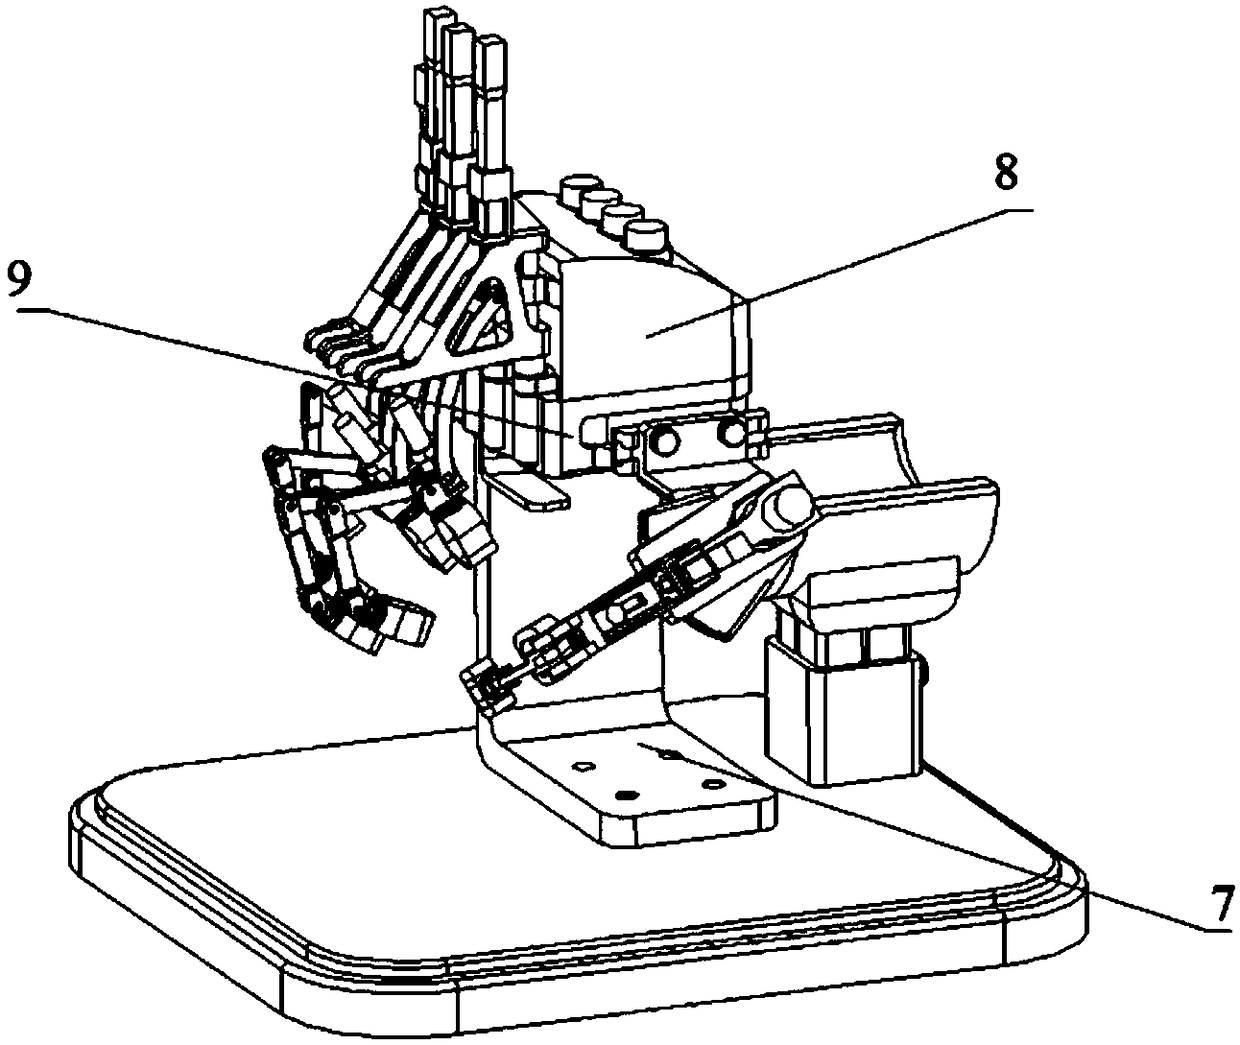 Exoskeleton type 15-degree-of-freedom rehabilitation manipulator mechanism